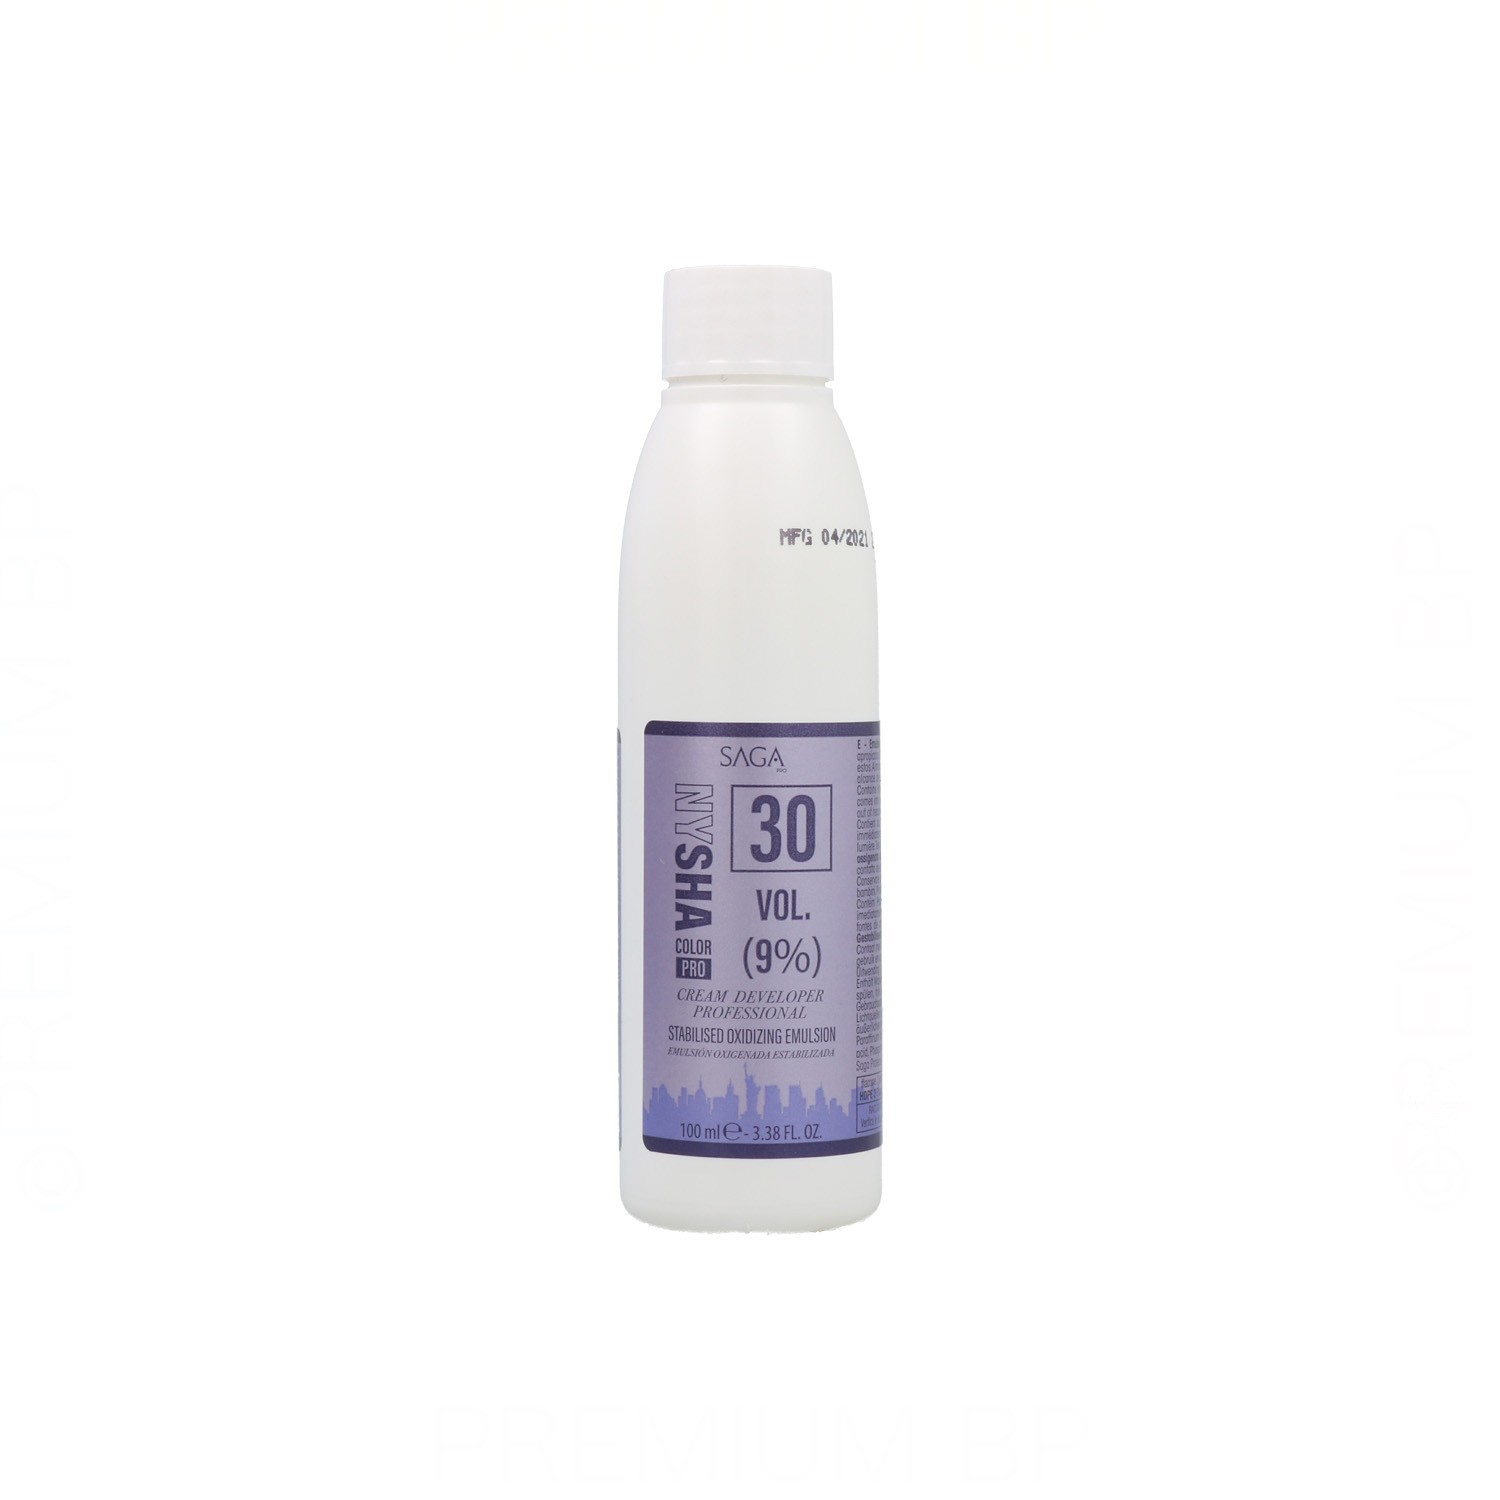 Saga Nysha Color Pro Oxidant 30 Vol (9%) 100 ml